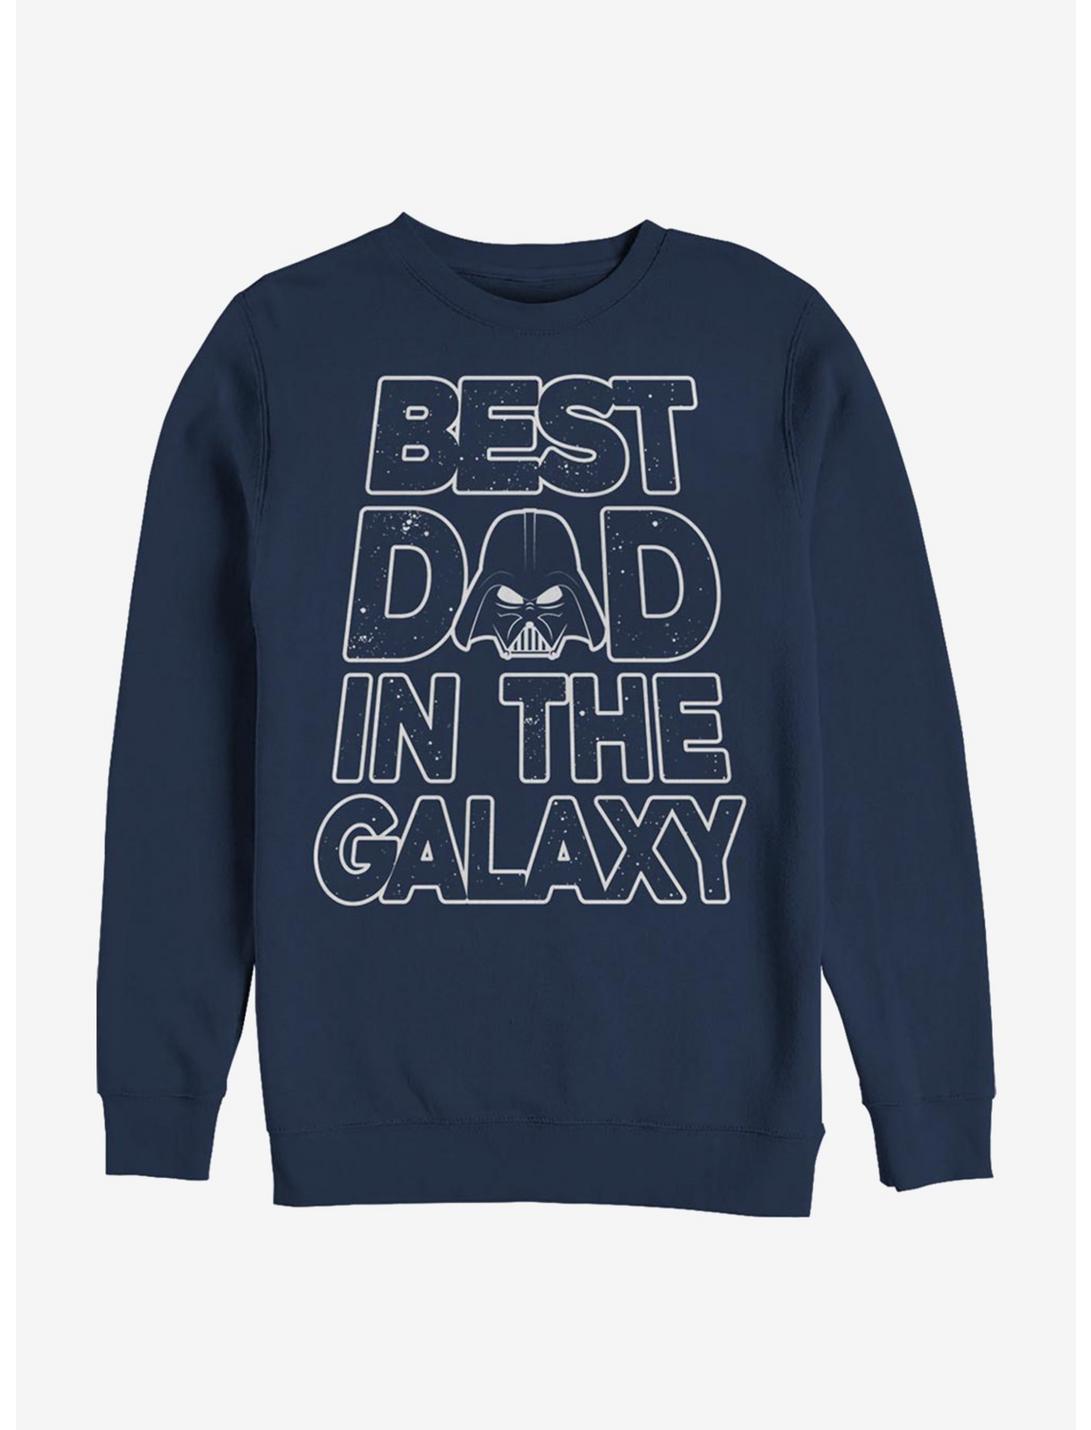 Star Wars Darth Vader Galaxy Dad Sweatshirt, NAVY, hi-res